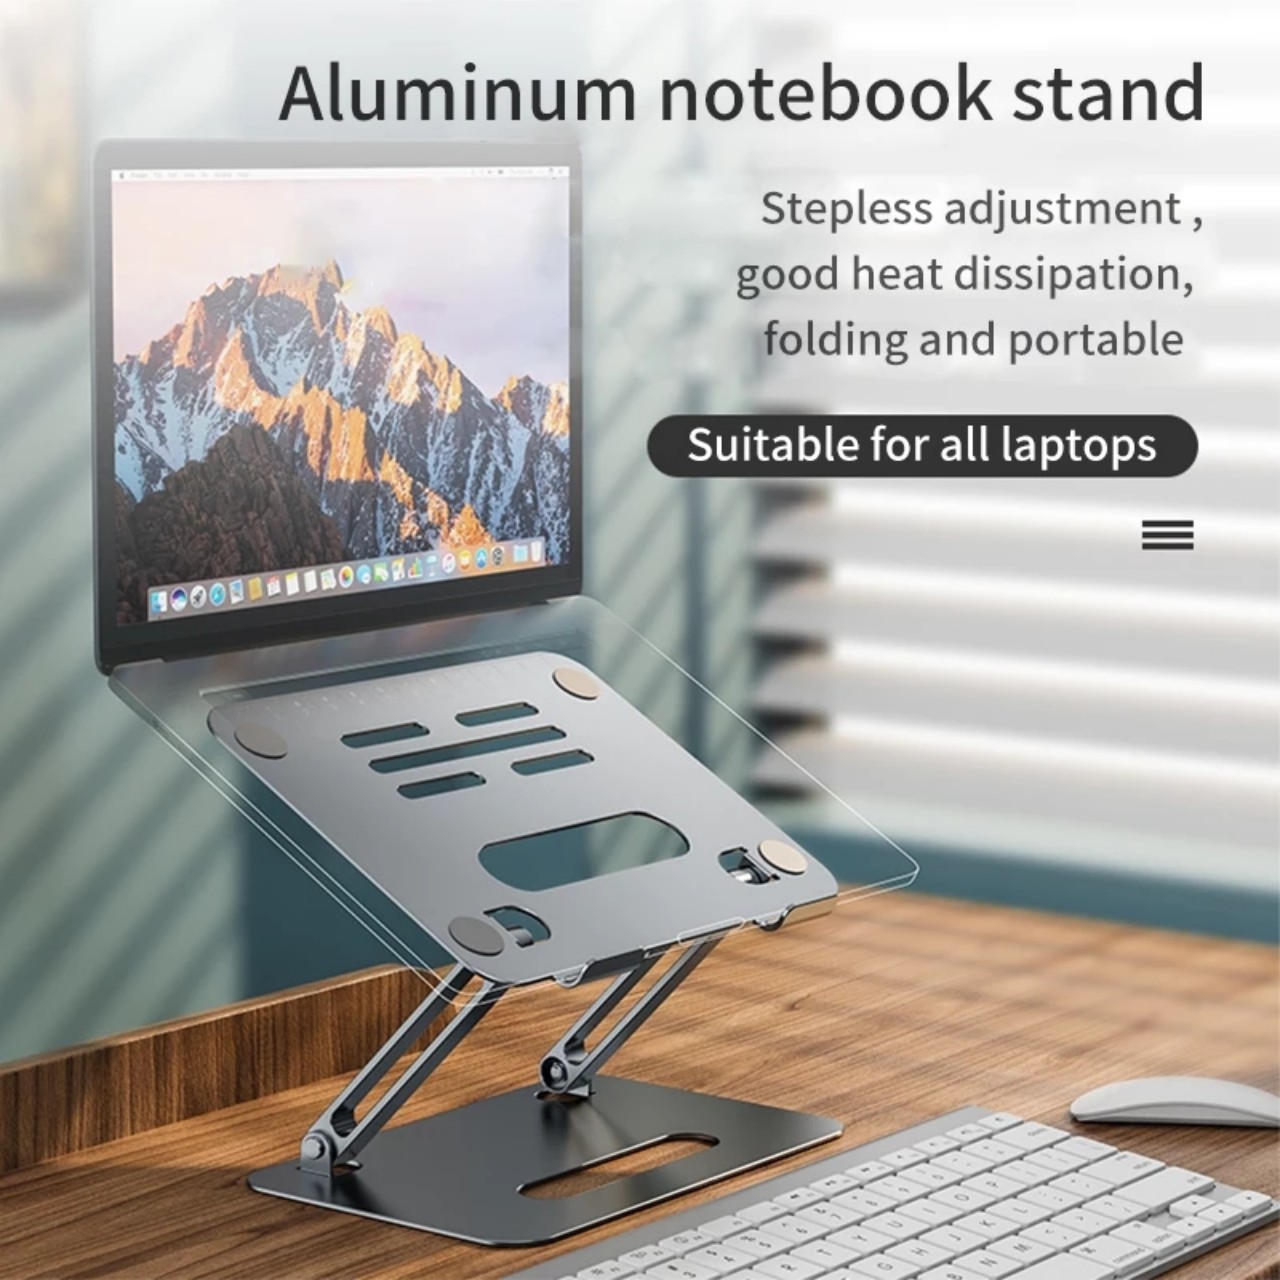 Giá Đỡ Laptop Macbook Kệ Laptop Stand Đế Tản Nhiệt Nhôm Nguyên Khối Cao Cấp P43 Kèm Vít Siết ỐC